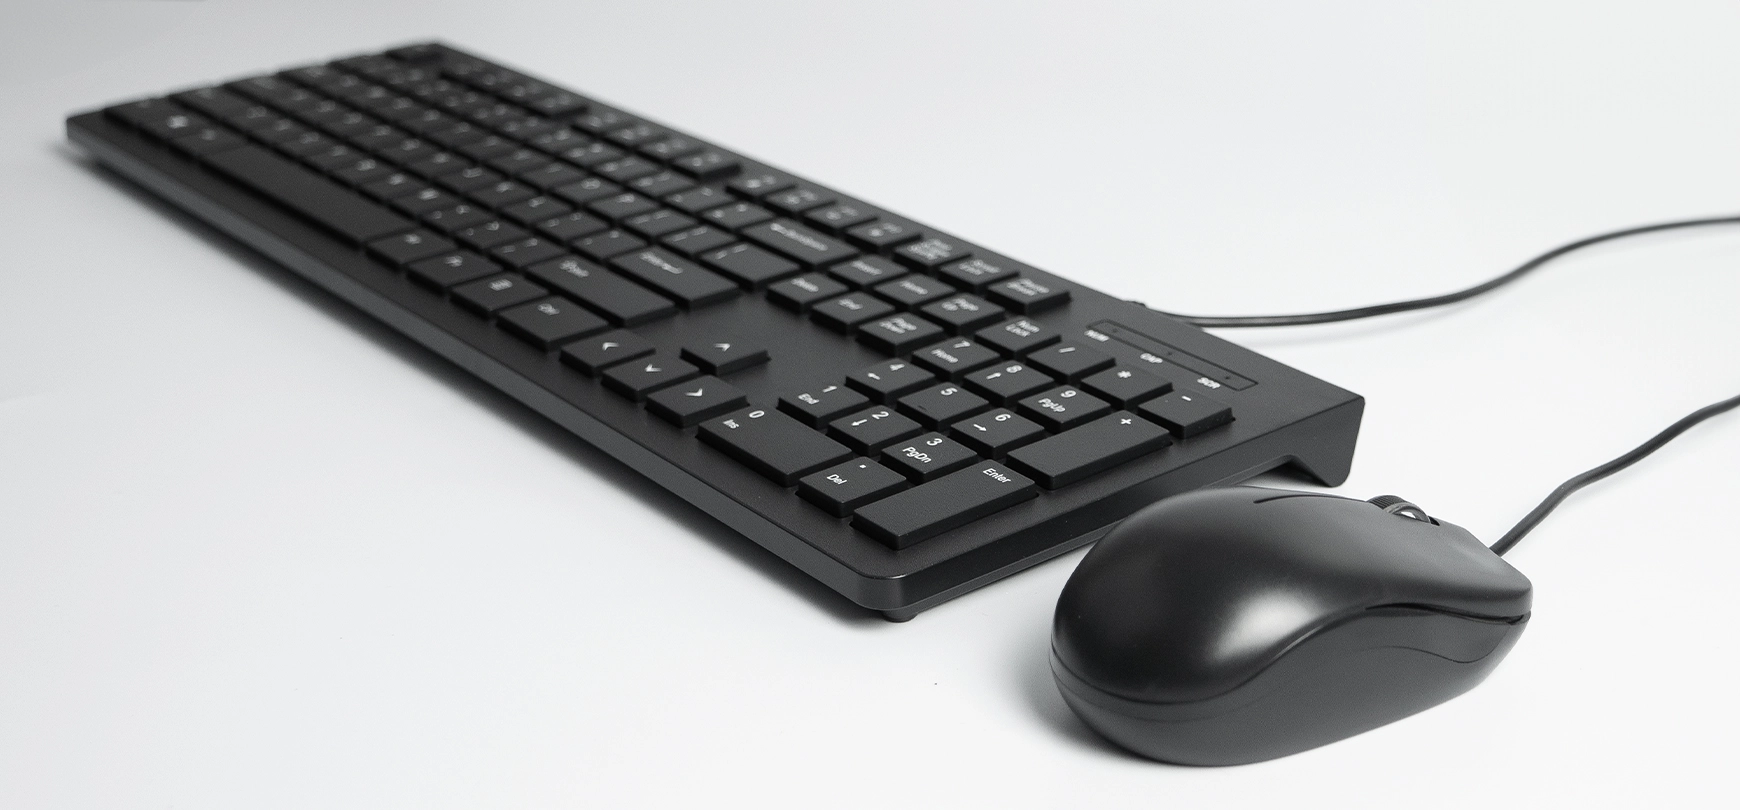 Set de ordenador minimalista - Ratón y teclado, negro